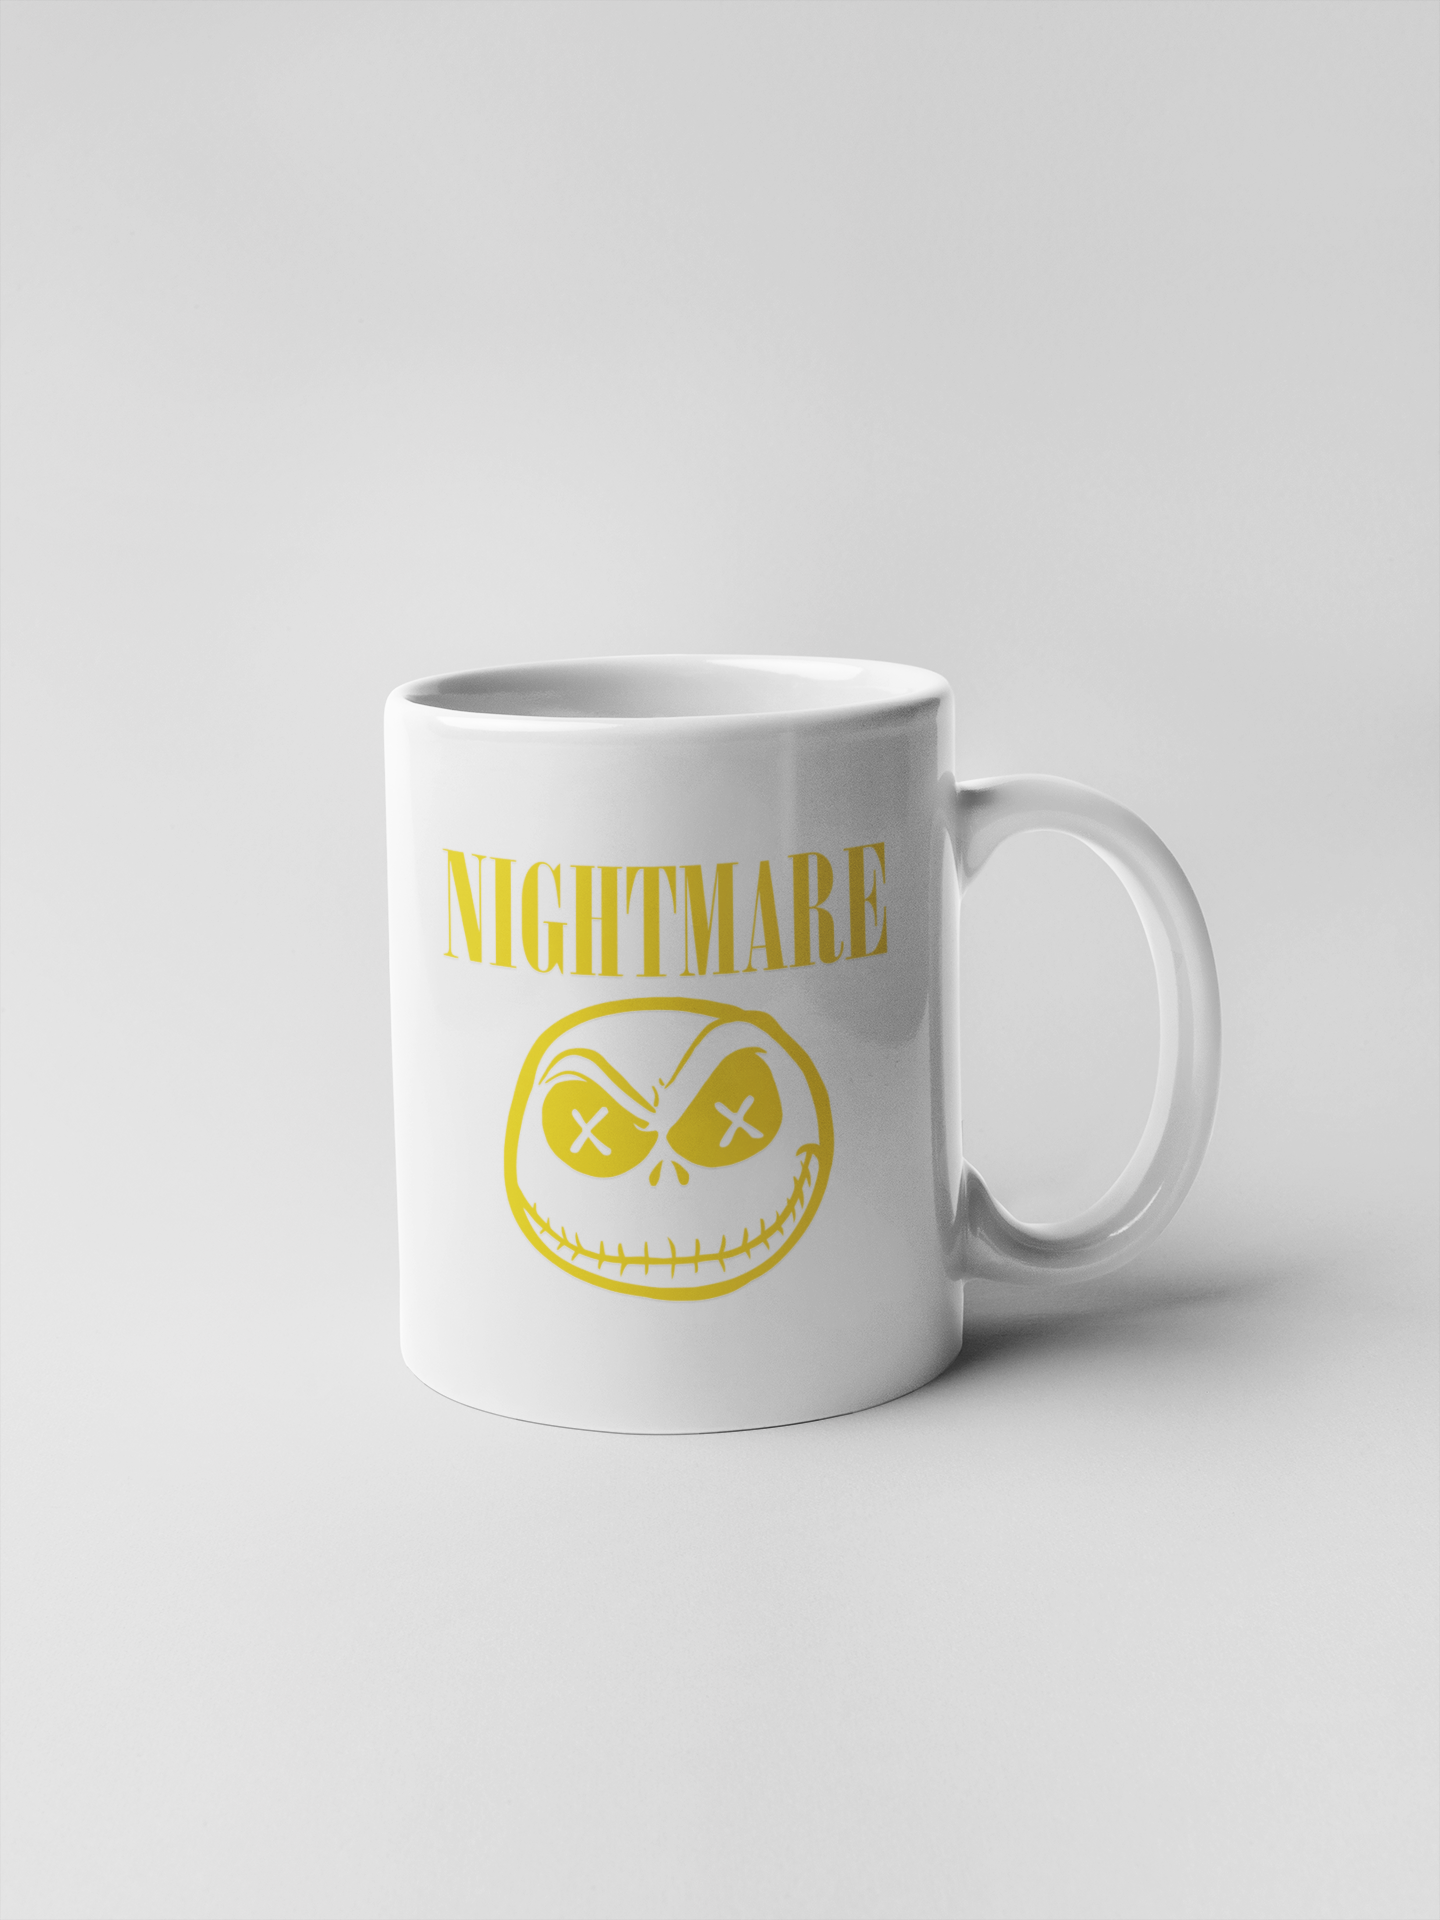 Nightmare Ceramic Coffee Mugs